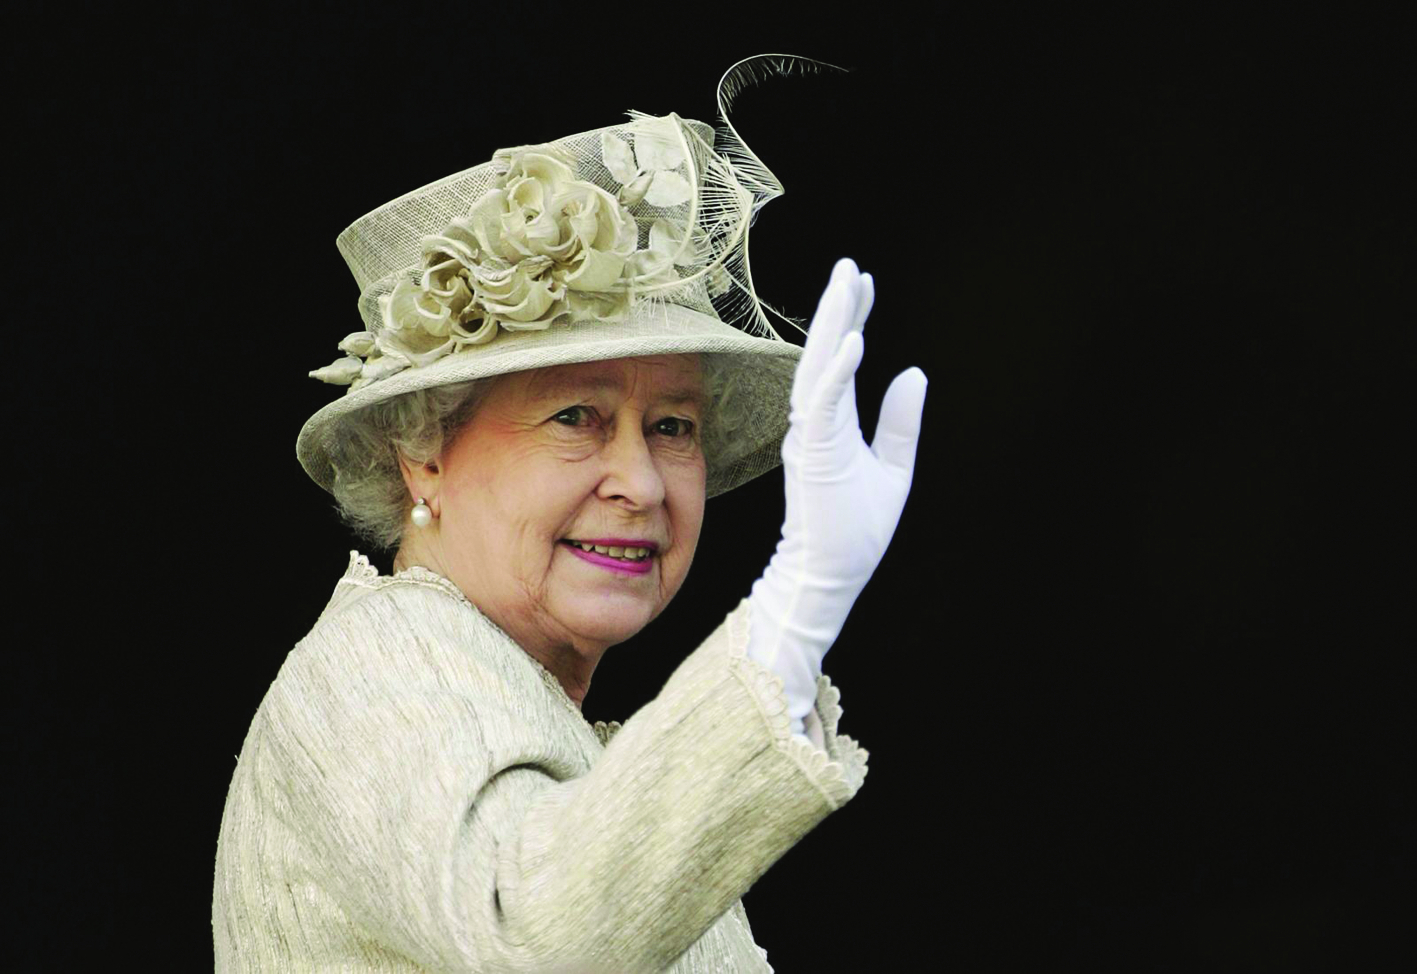 Nữ hoàng Elizabeth II luôn là một biểu tượng cho sự kiên cường, ổn định của quốc gia  và là một người mẹ nước Anh - ẢNH: CNN